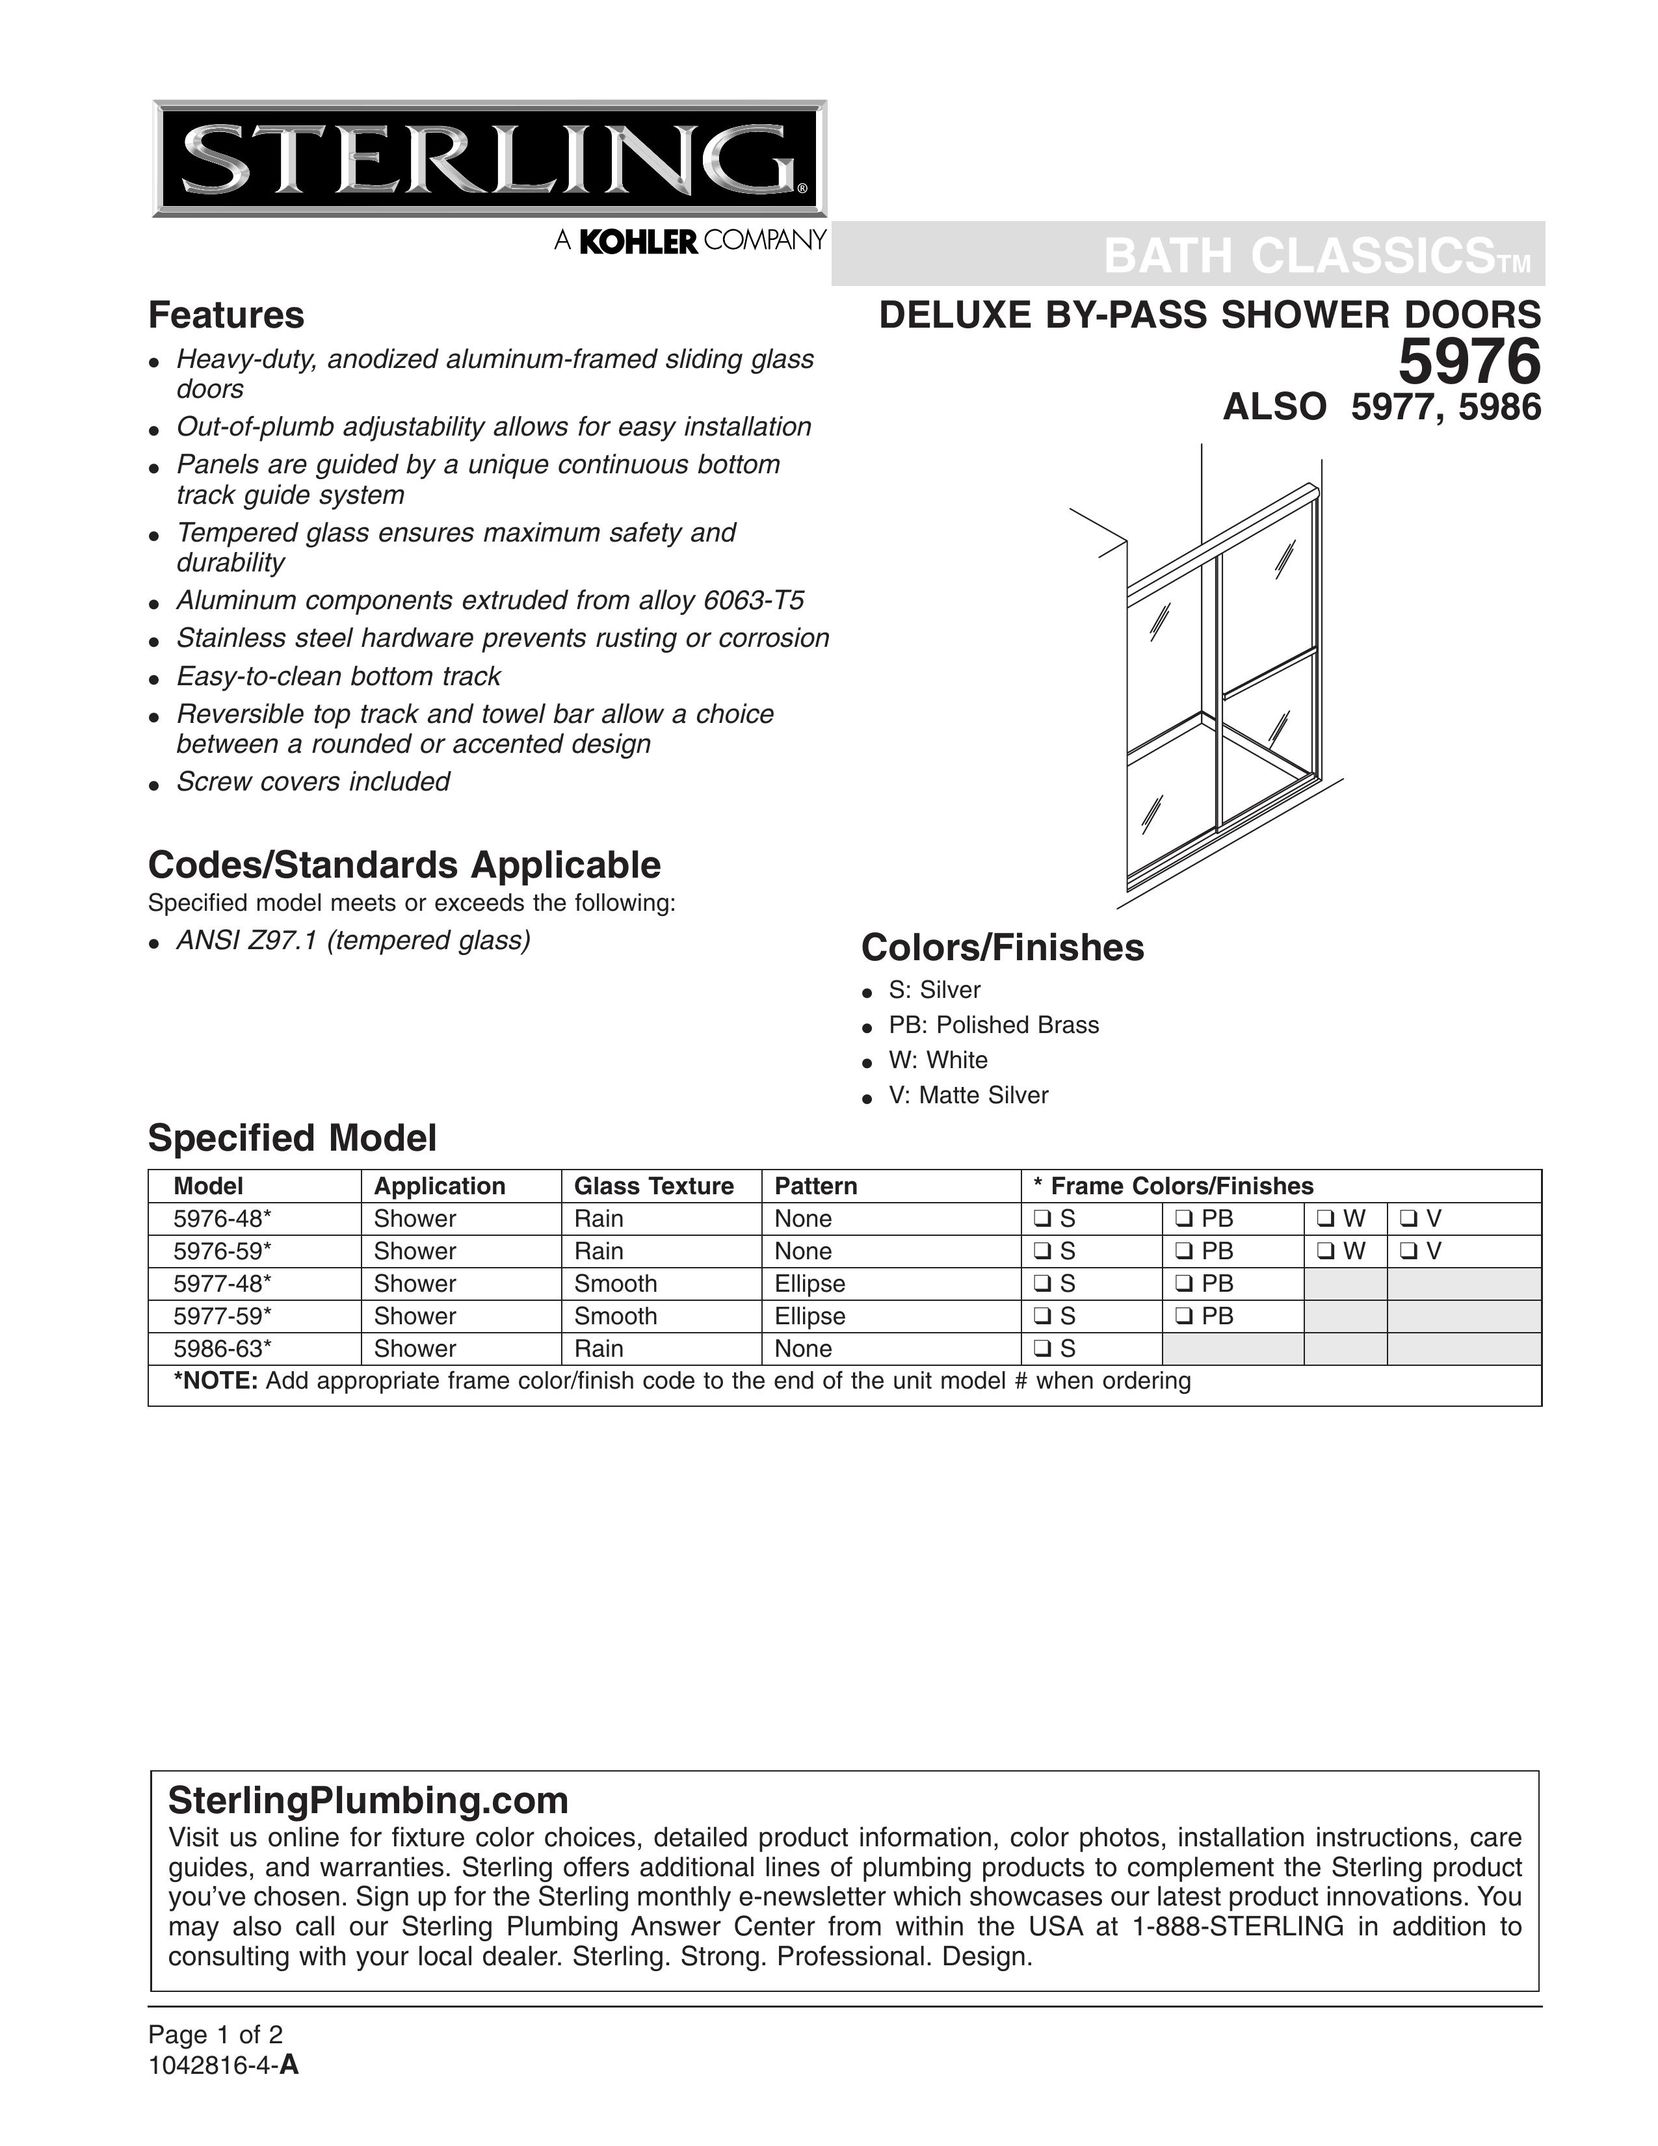 Sterling Plumbing 5986 Door User Manual